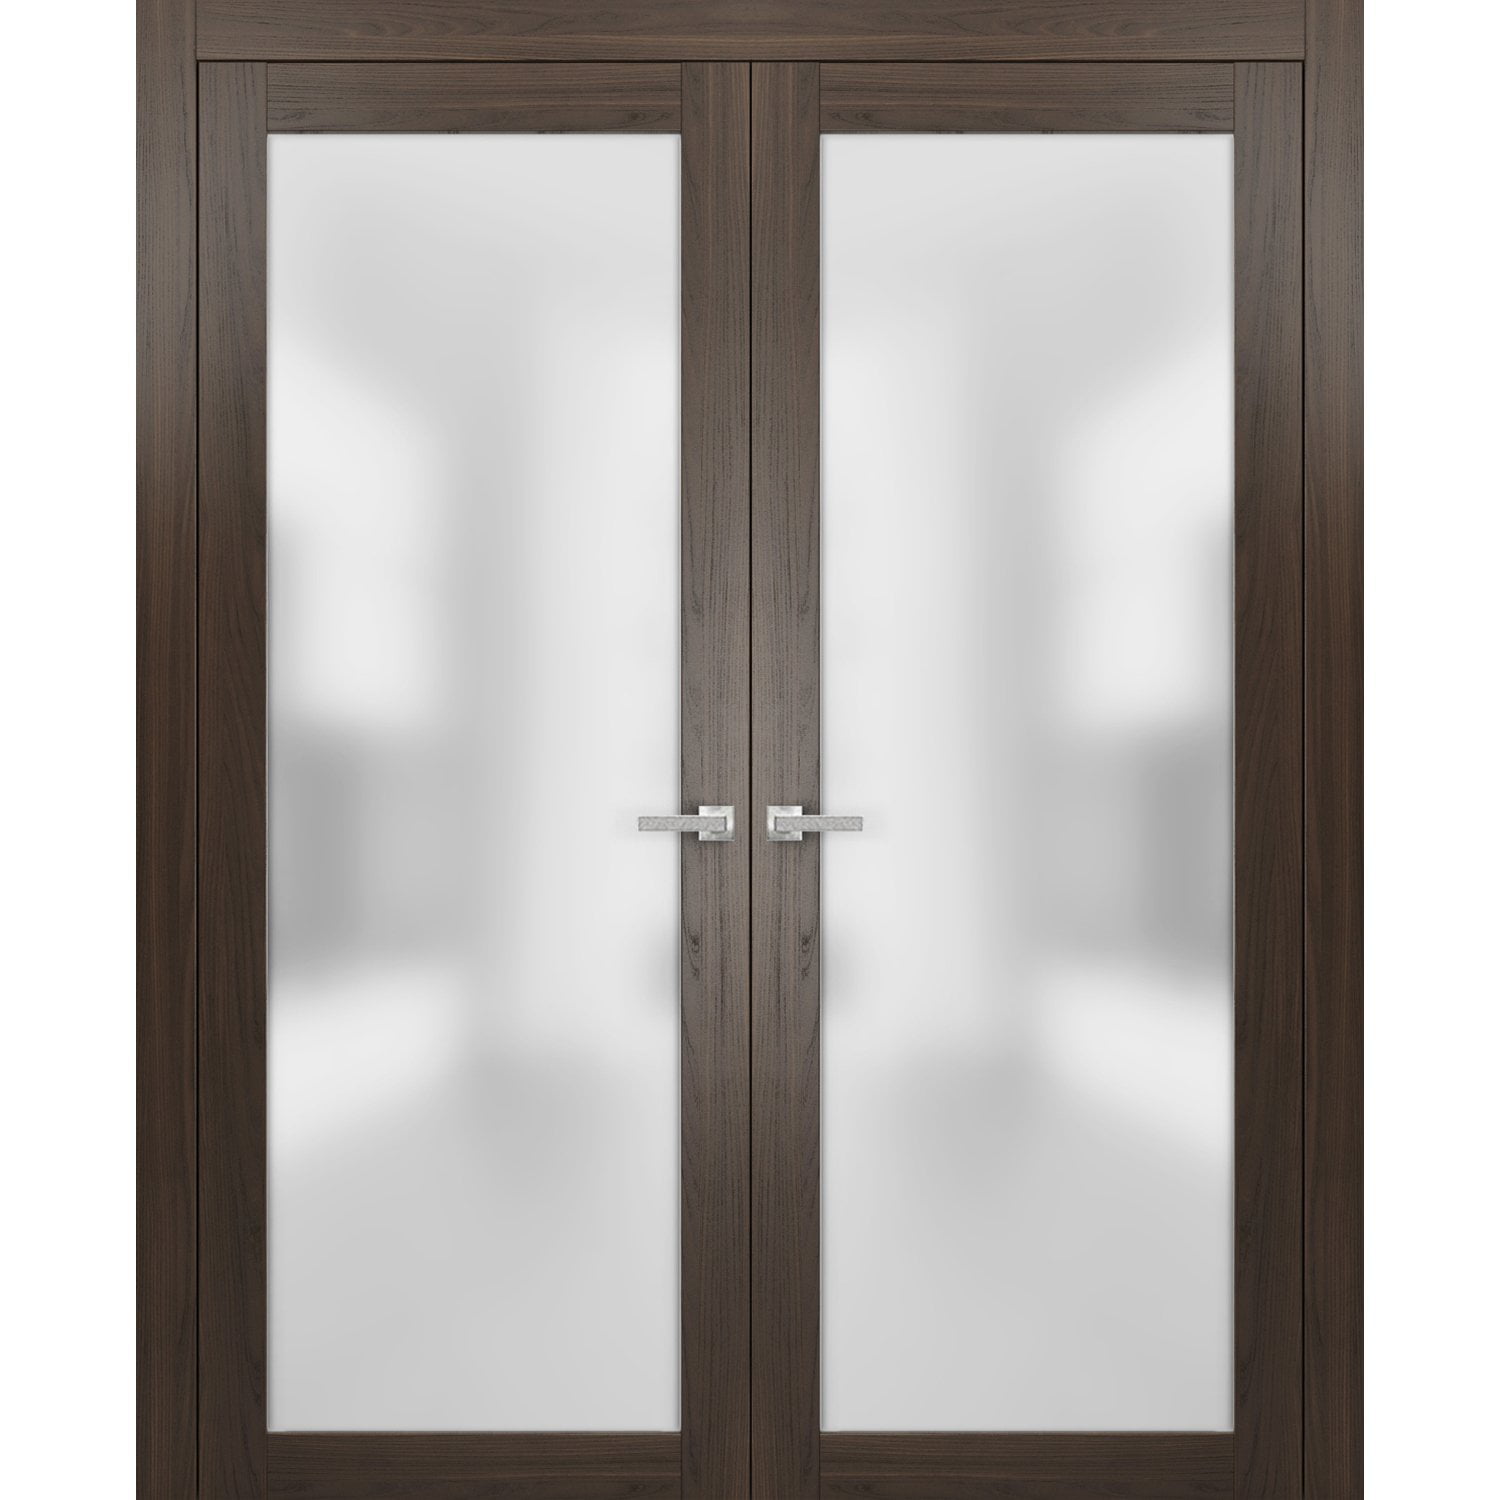 Planum 2102 Chocolate Ash Lite Opaque Glass Door 18 x 80 Frames Trims Satin Nickel Hardware Solid Core Wood Pre-Hung Door